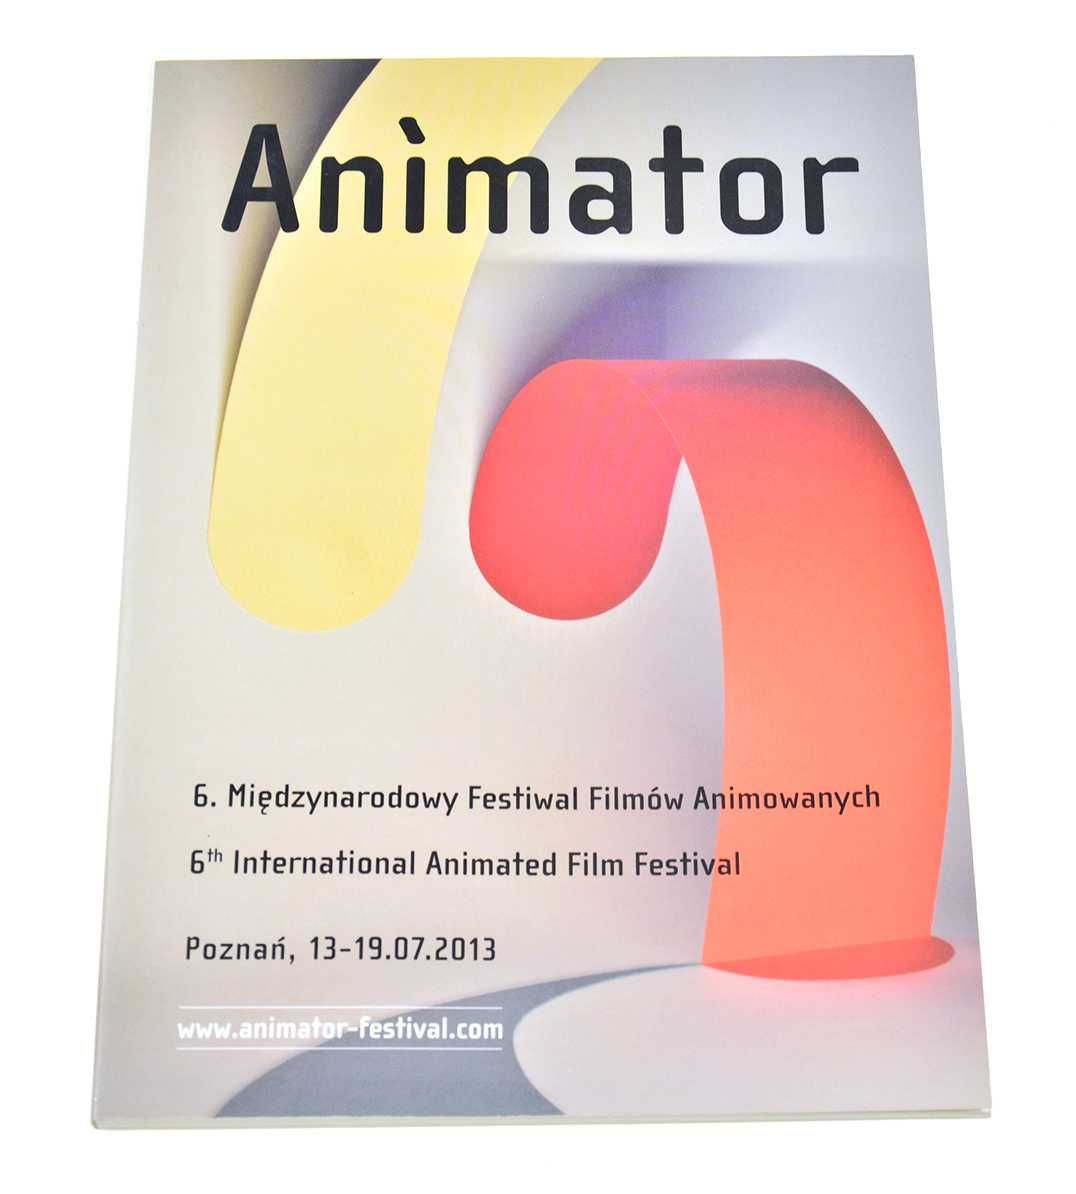 Animator 2013 - katalog festiwalu, Poznań, film animowany